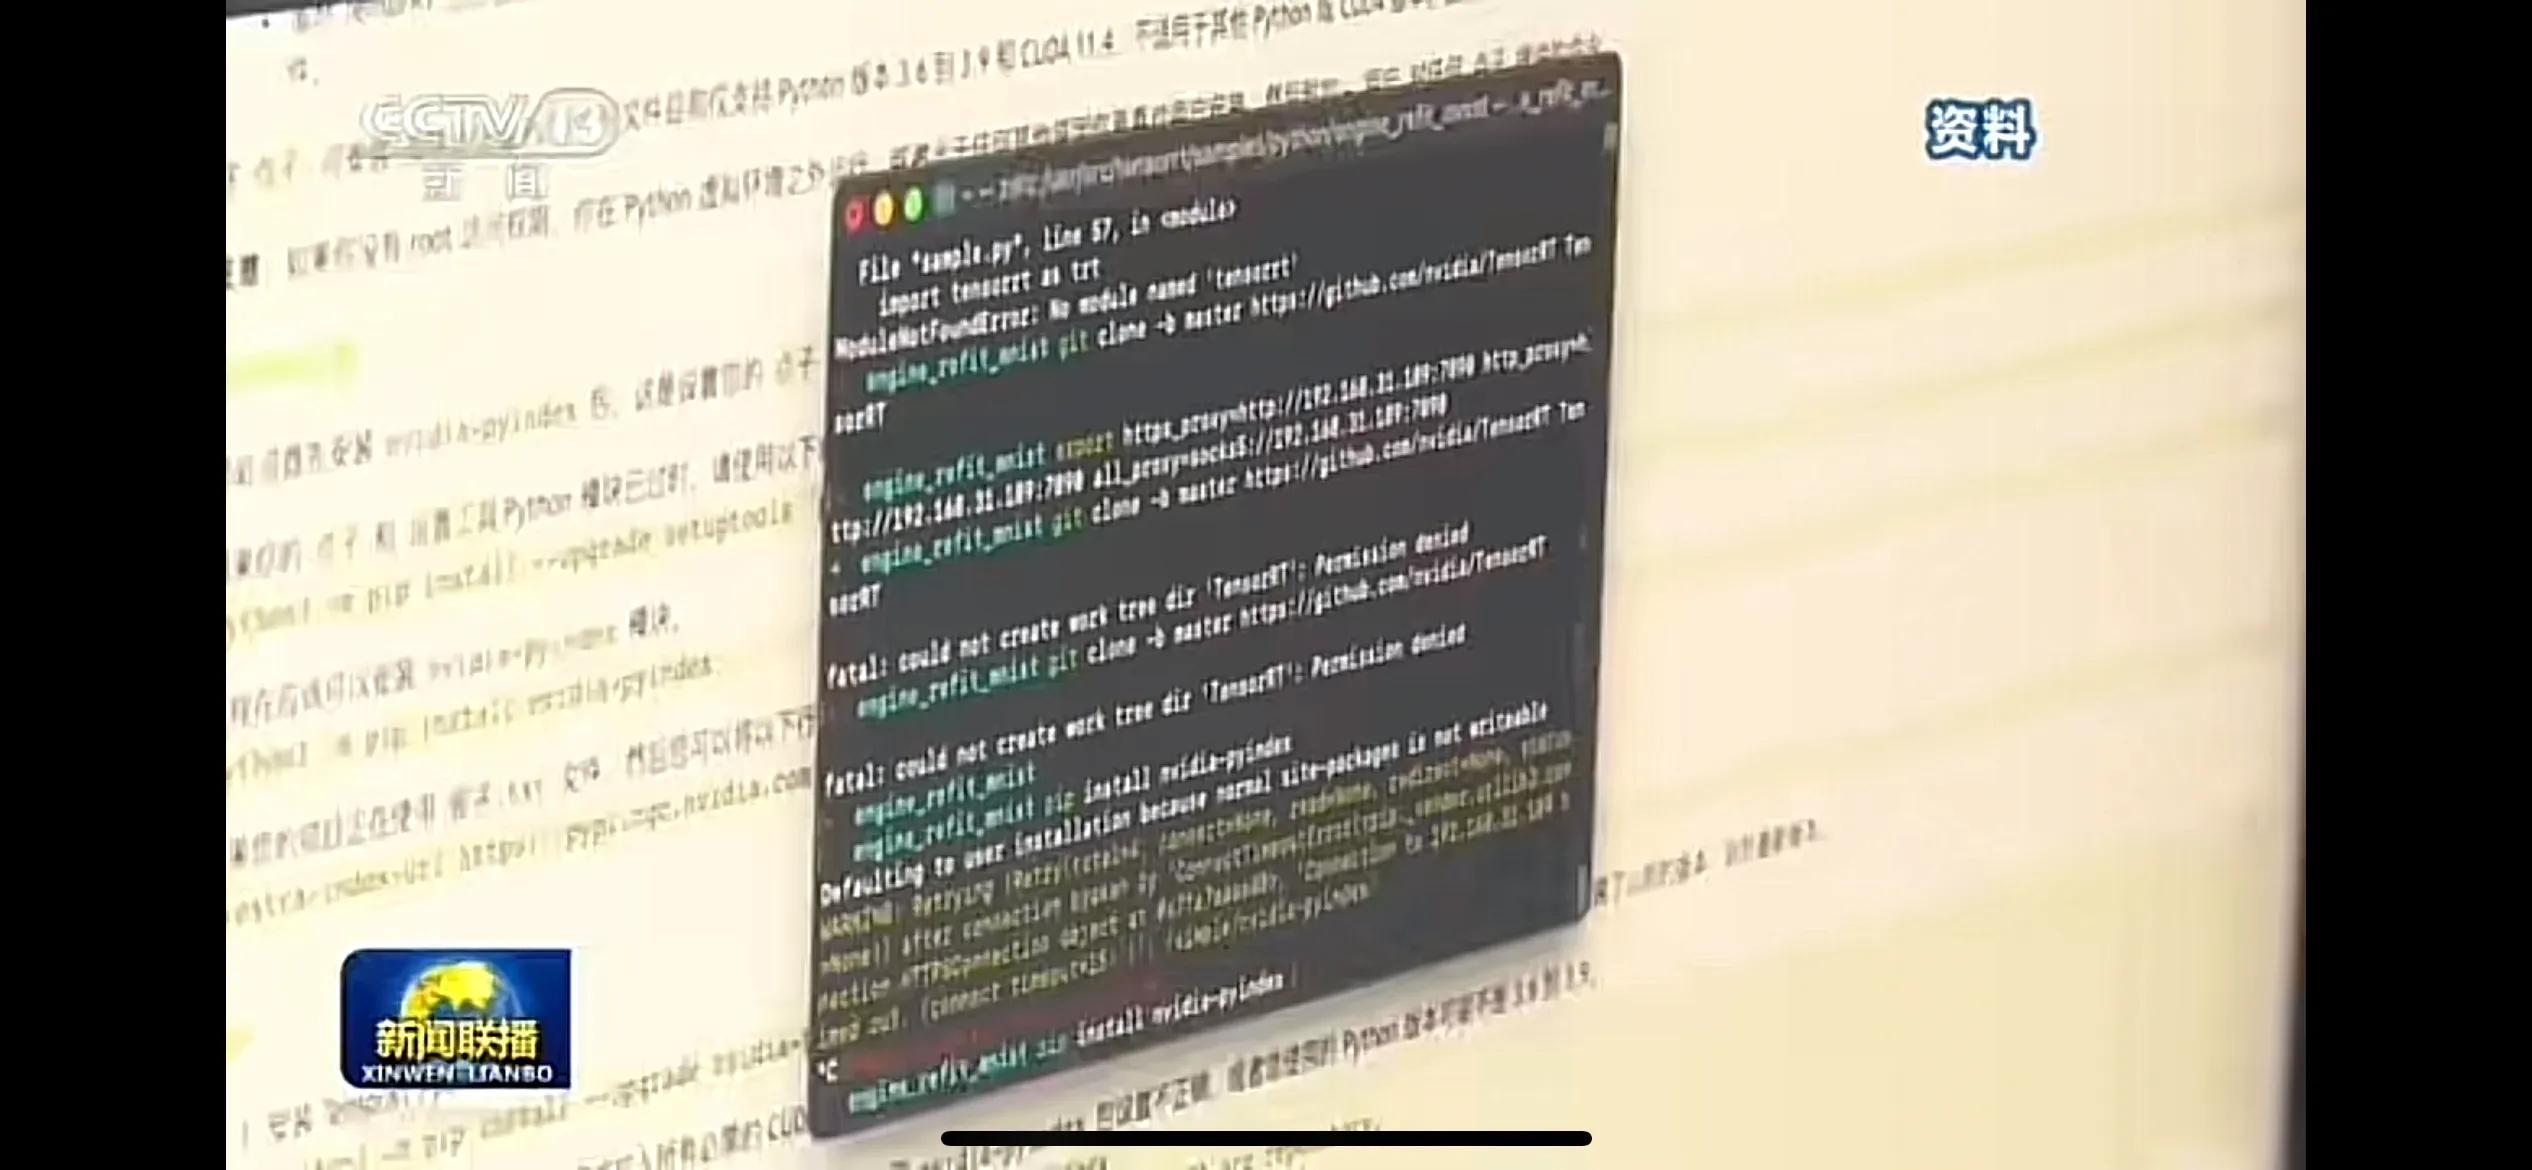 央视一条程序员屏幕的短暂镜头揭露了中国程序员的无奈